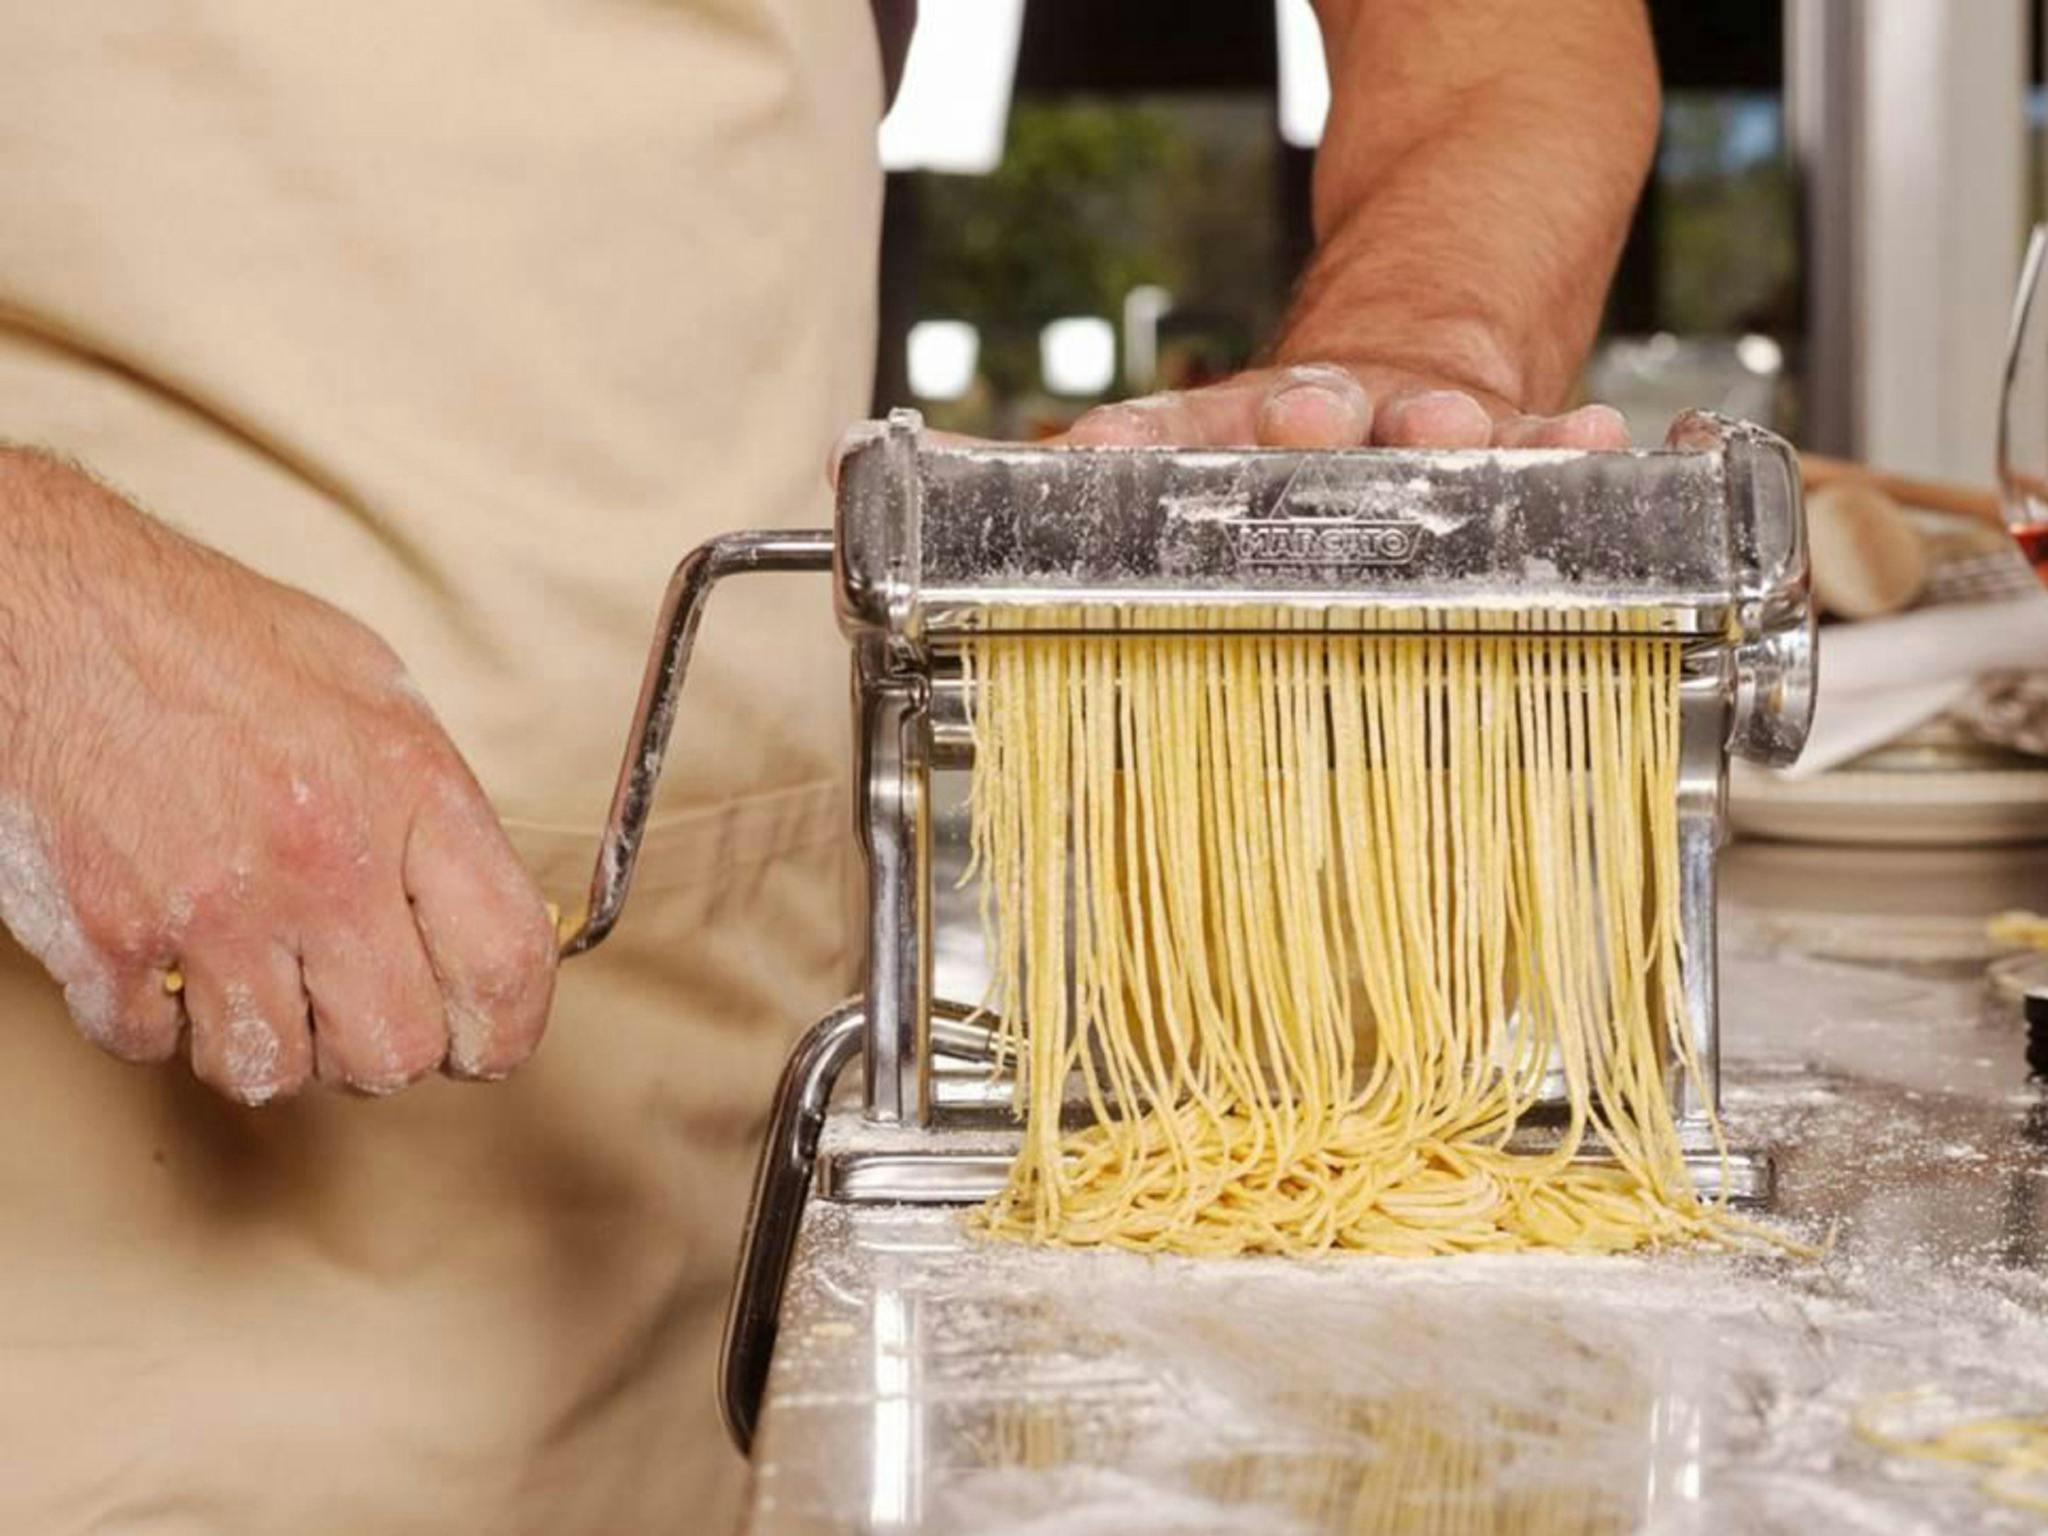 Pasta making